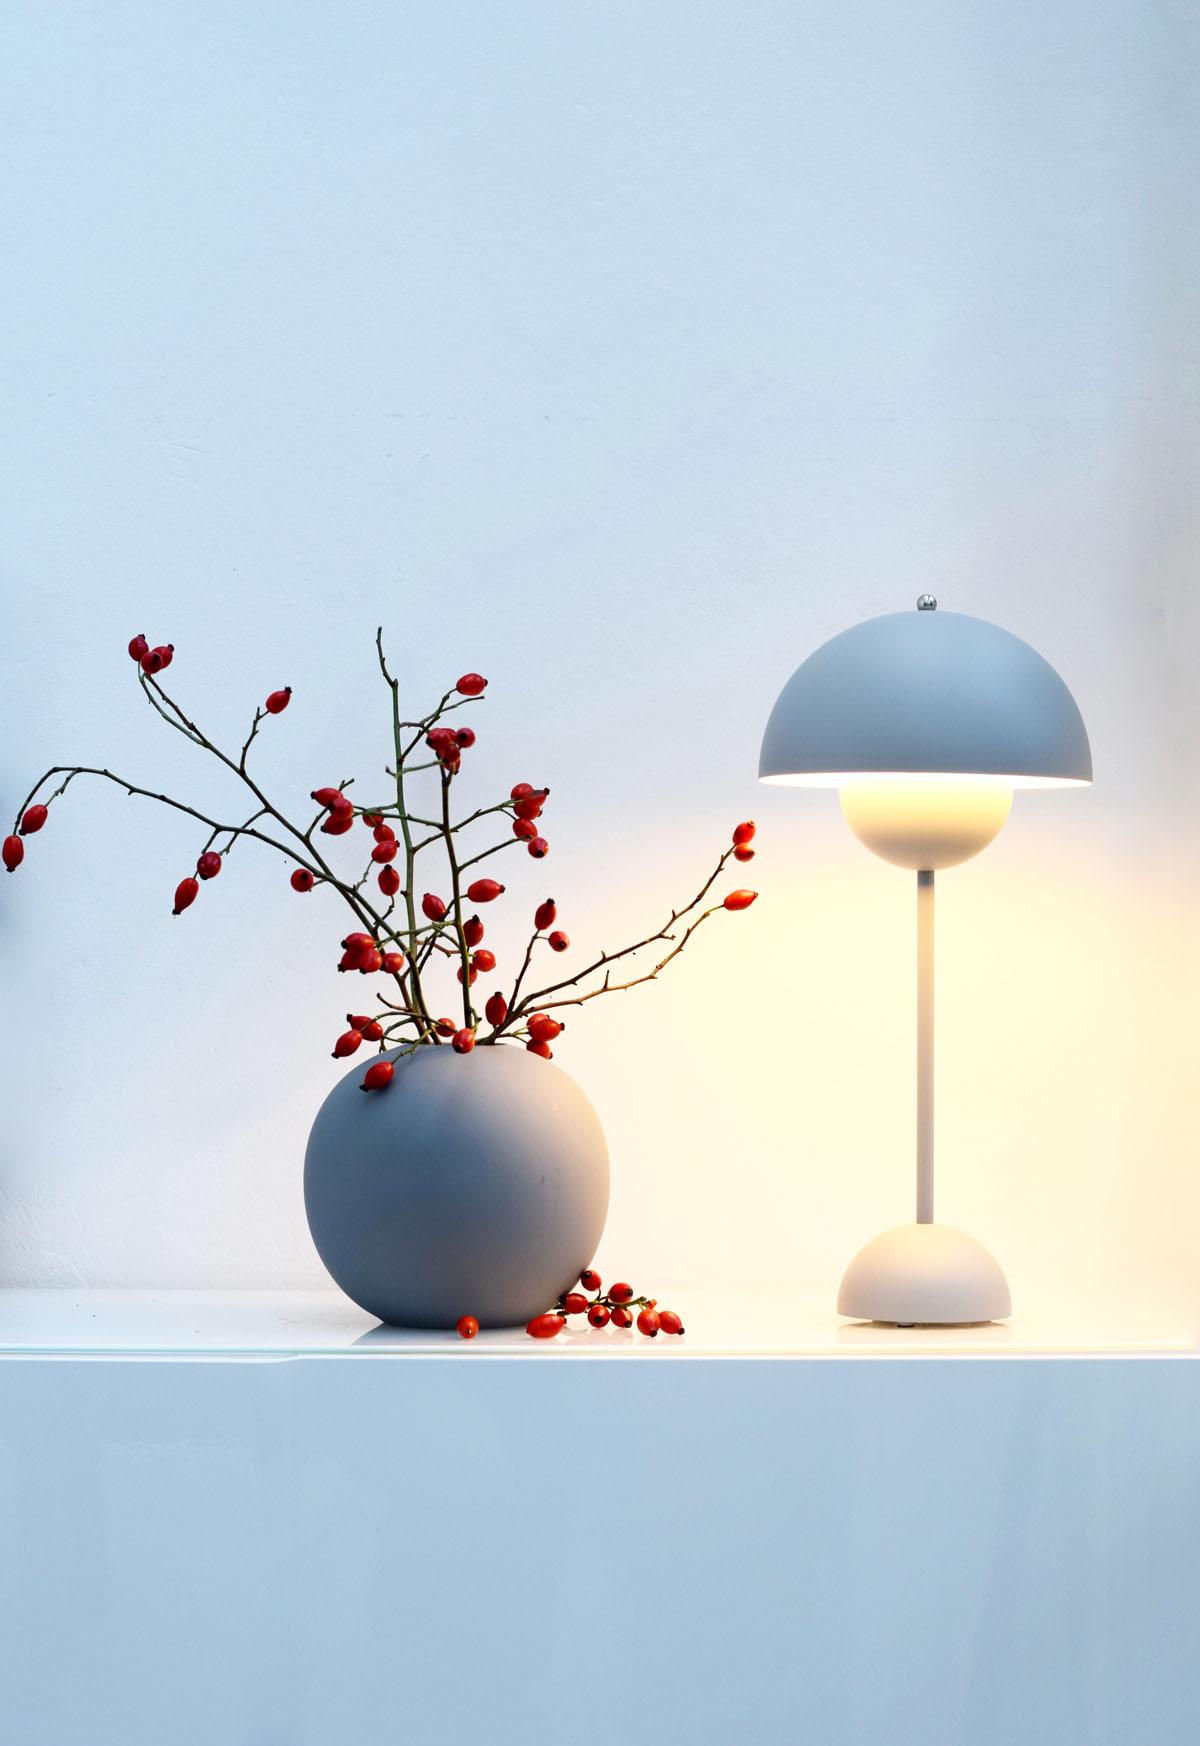 Simplicity...
#hagebutten #ballvase #flowerpot #grau #minimalismus